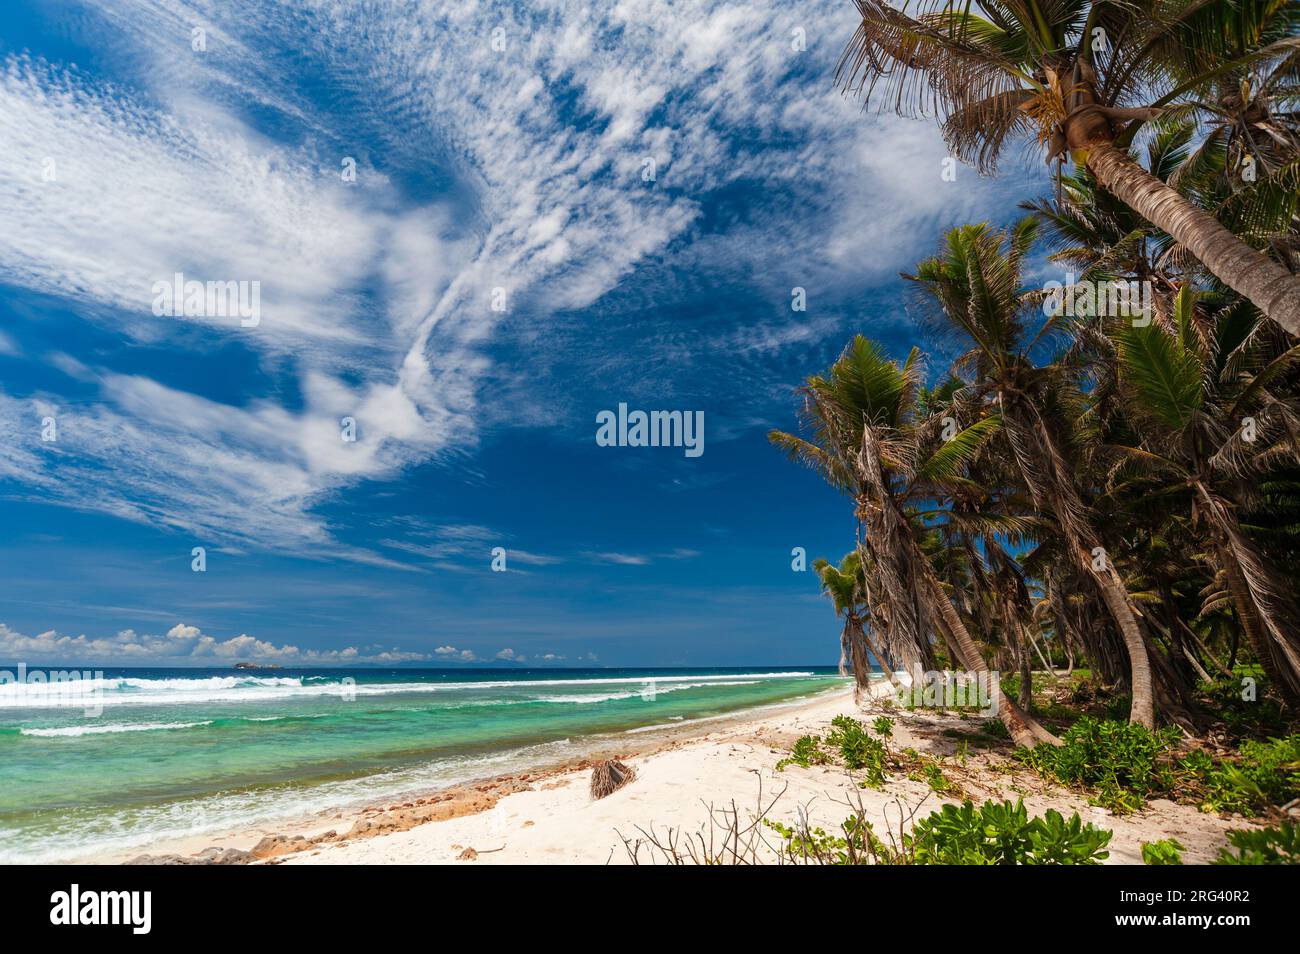 Der tropische, sandige, von Palmen gesäumte Strand von Grand Anse. Grand Anse Beach, Fregate Island, Republik der Seychellen. Stockfoto